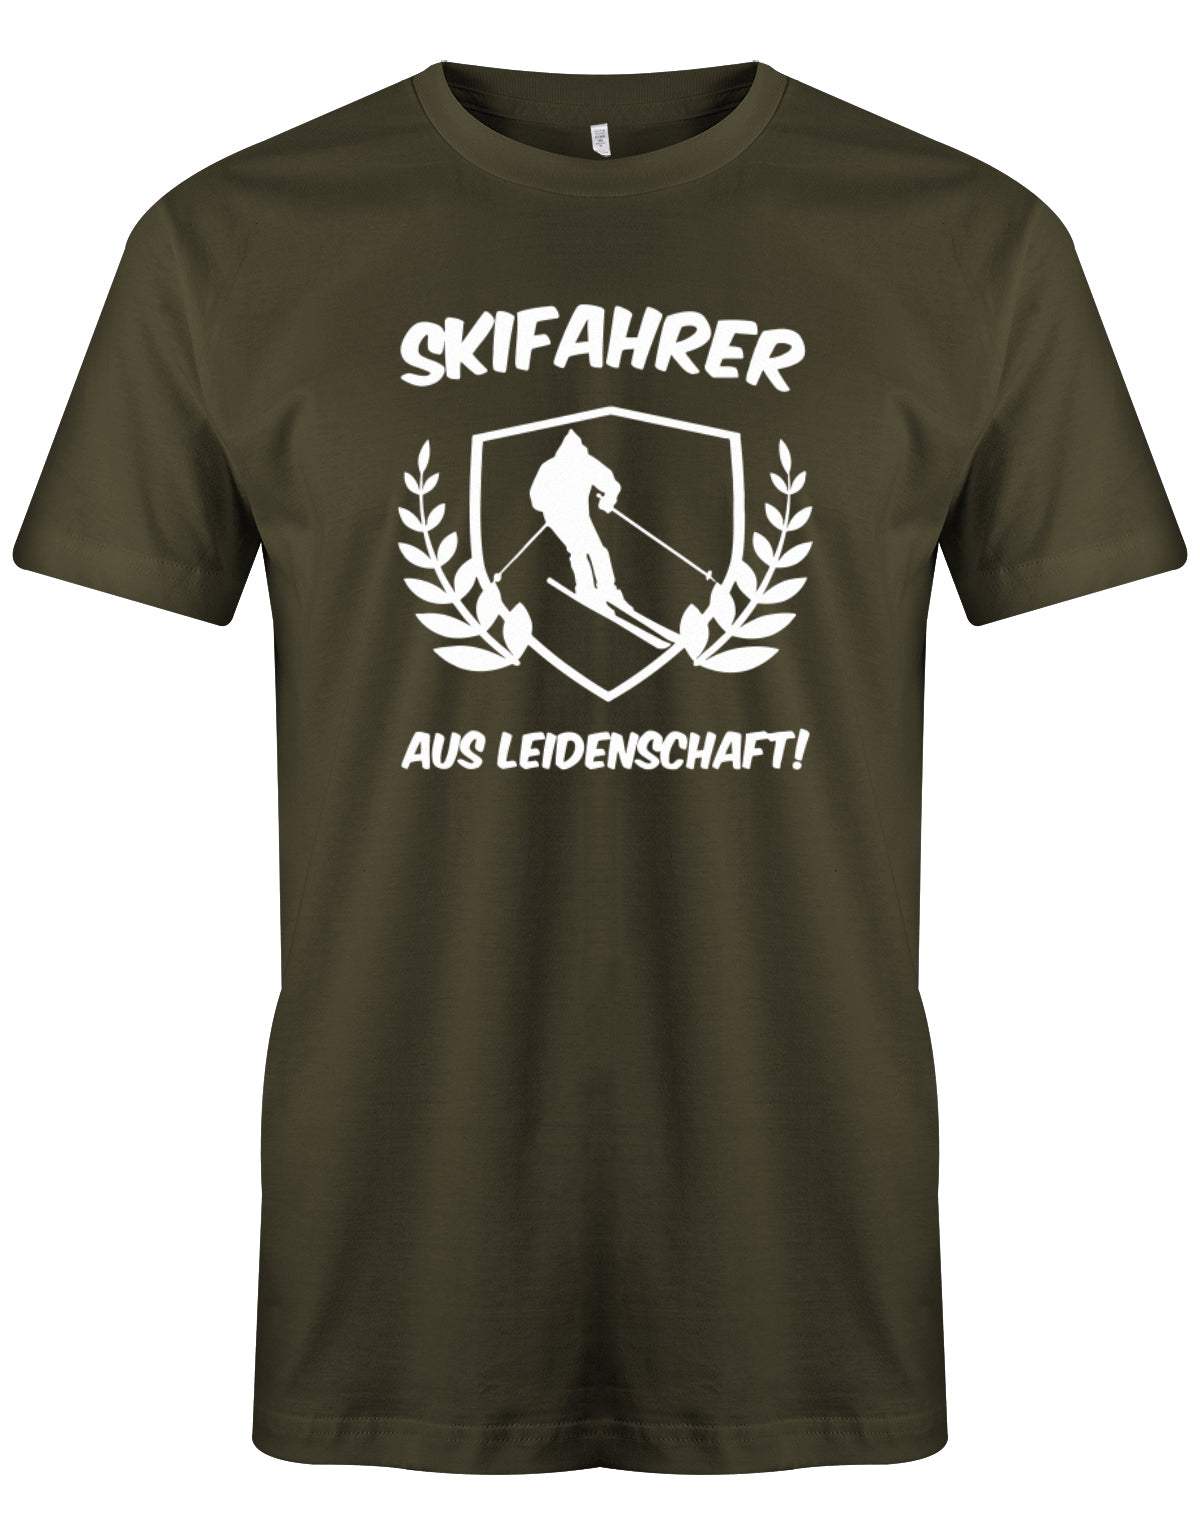 herren-shirt-armyVw2NF9pJAu0zT